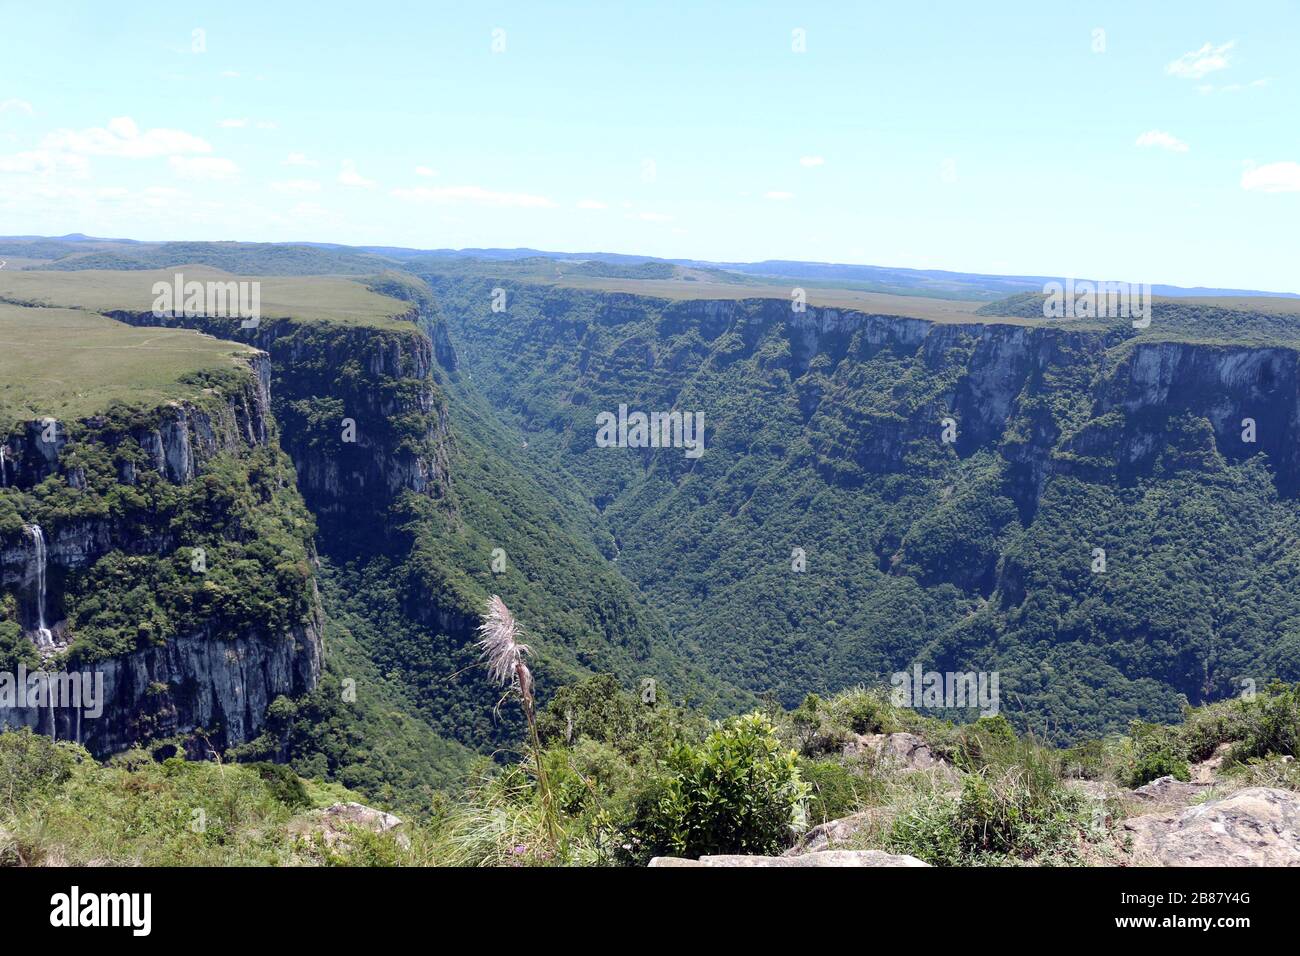 Das ist die Festung Aparados! Dort befindet sich der Serra-Geral-Nationalpark. Rio Grande do Sul, Brasilien, America Latina Stockfoto